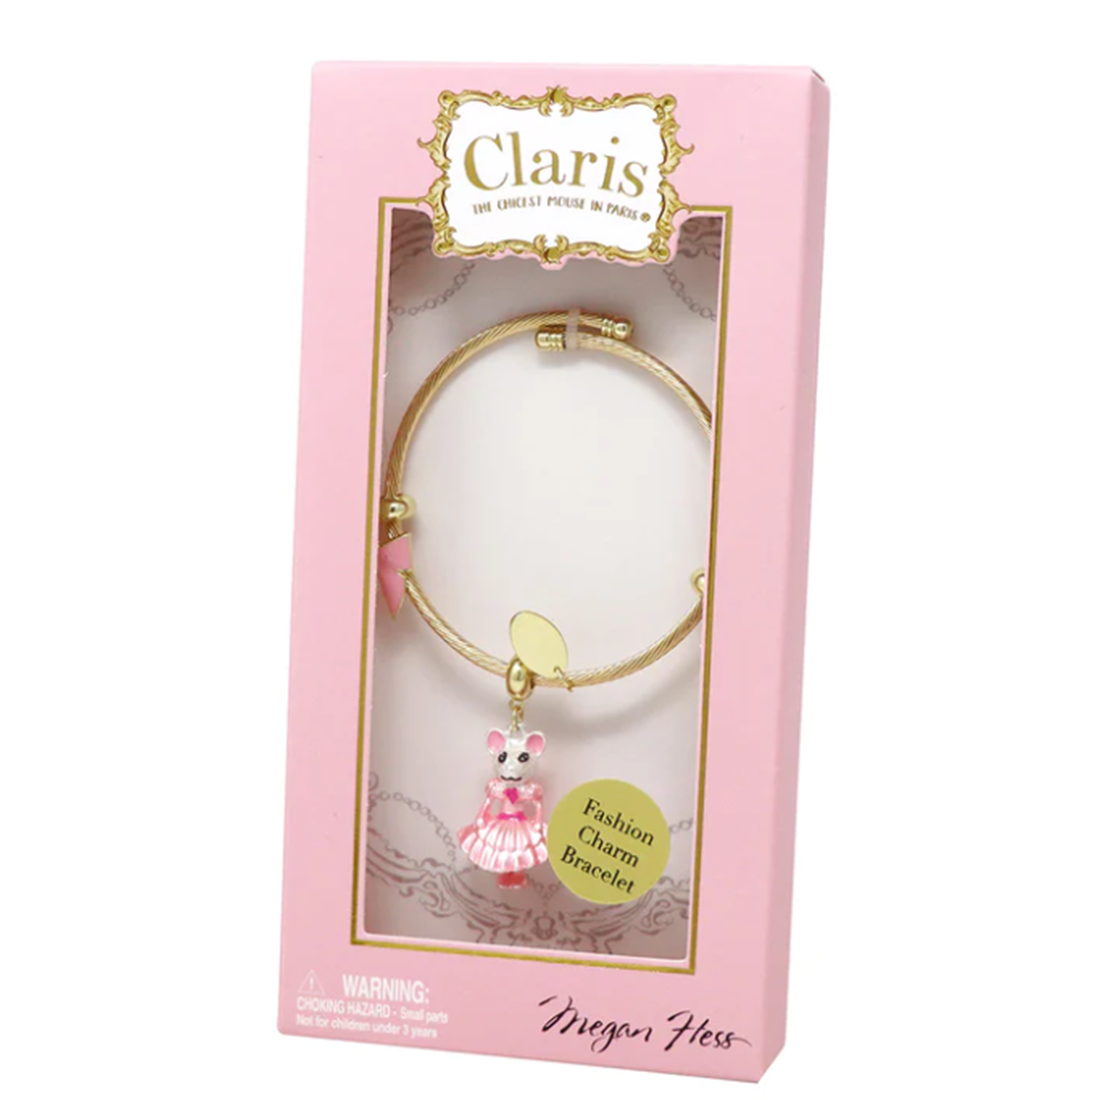 Claris - The Chicest Mouse in Paris Charm Bracelet